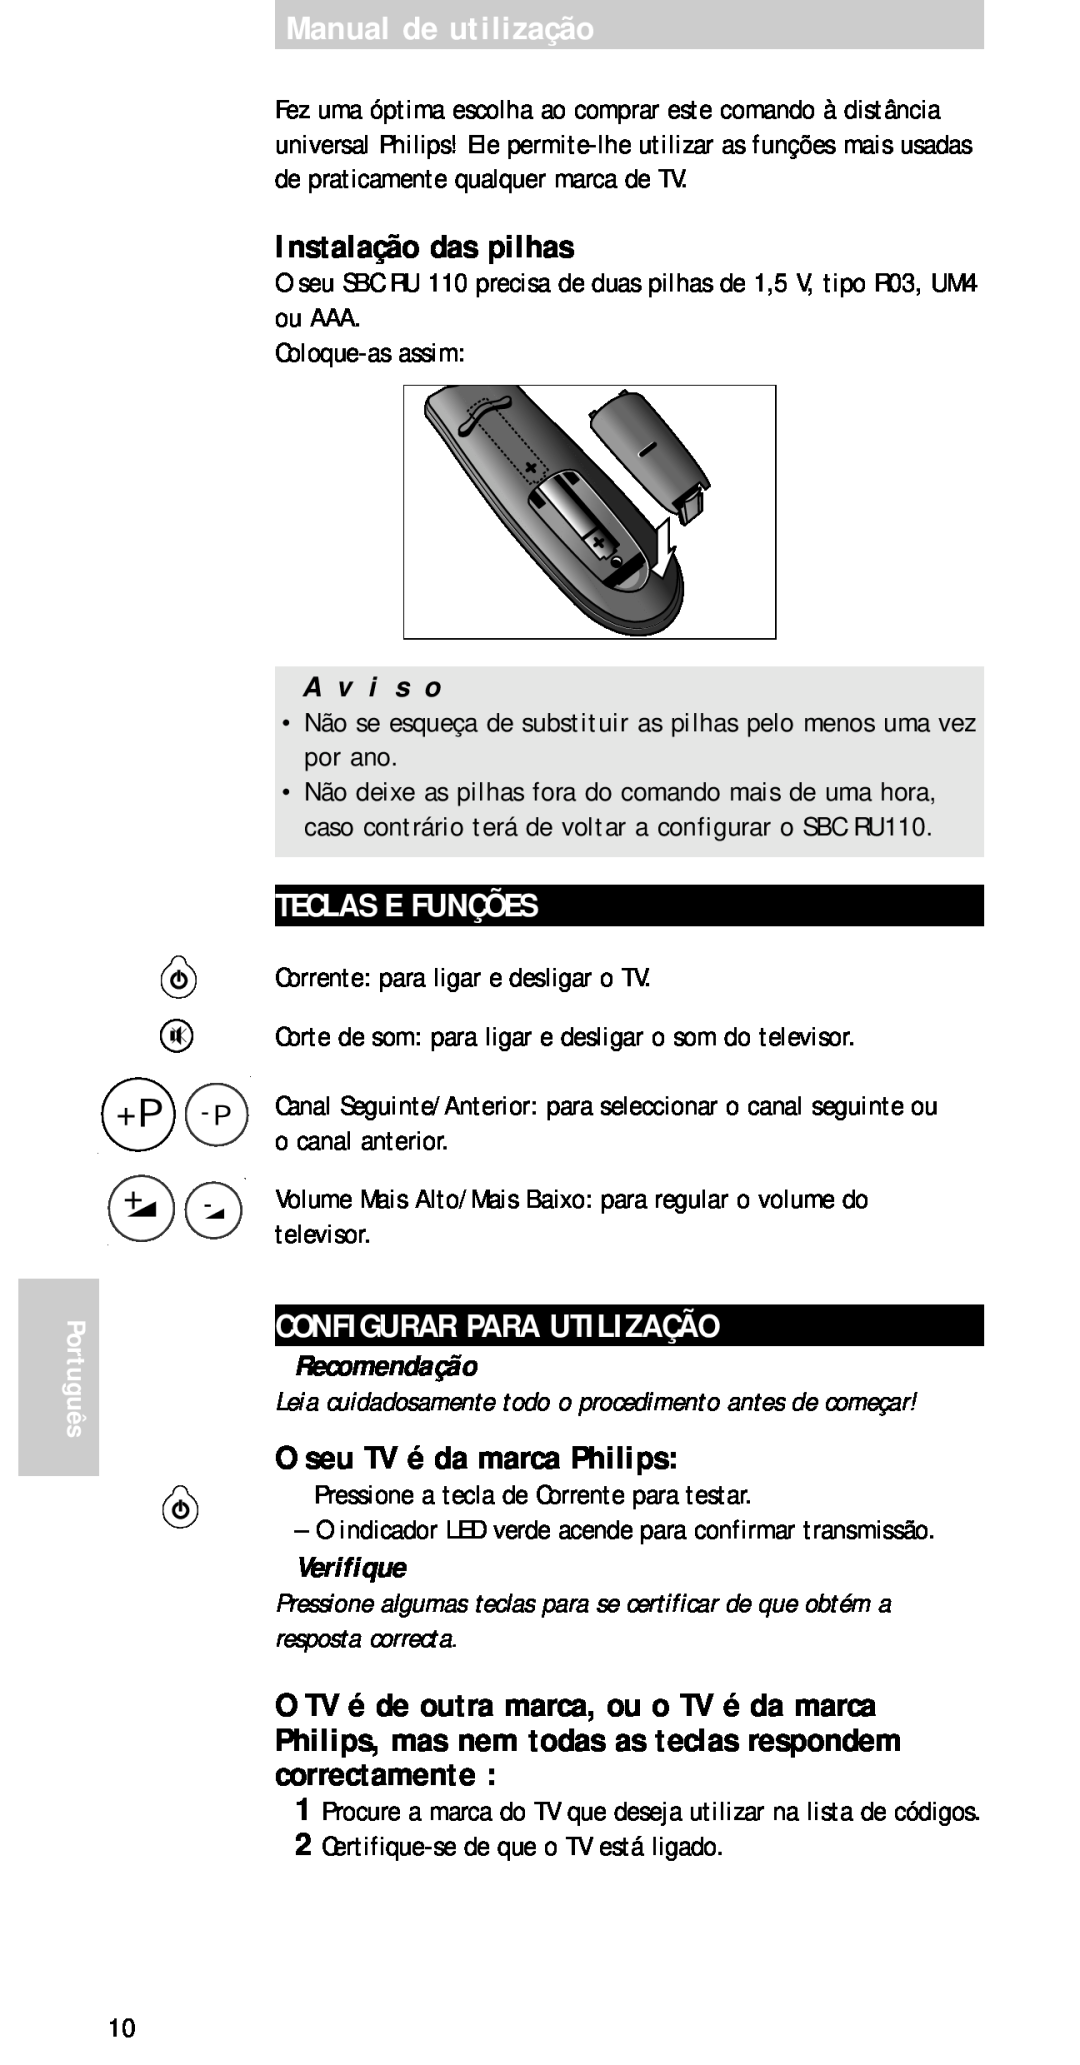 Philips sbc ru 110 Manual de utilização, Instalação das pilhas, Teclas E Funções, Configurar Para Utilização, A v i s o 